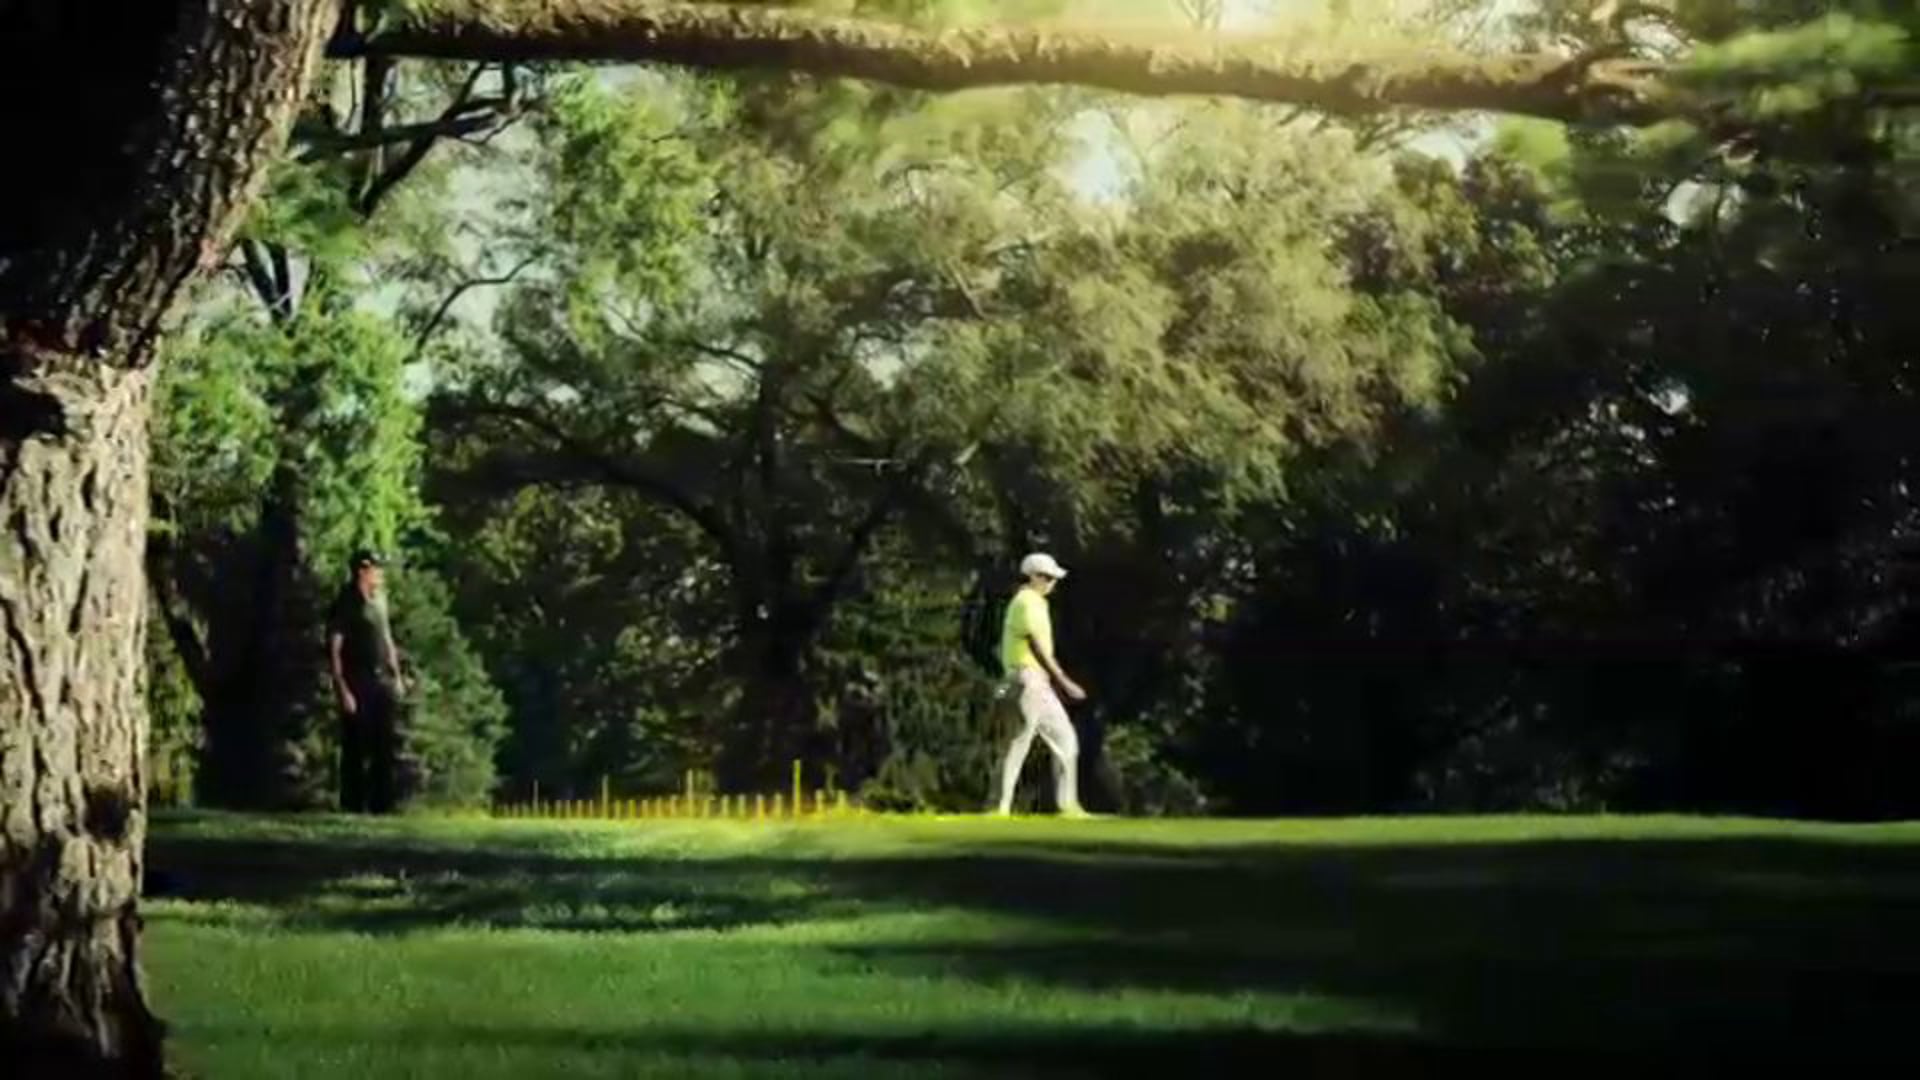 TaylorMade Golf "Walk It Off"